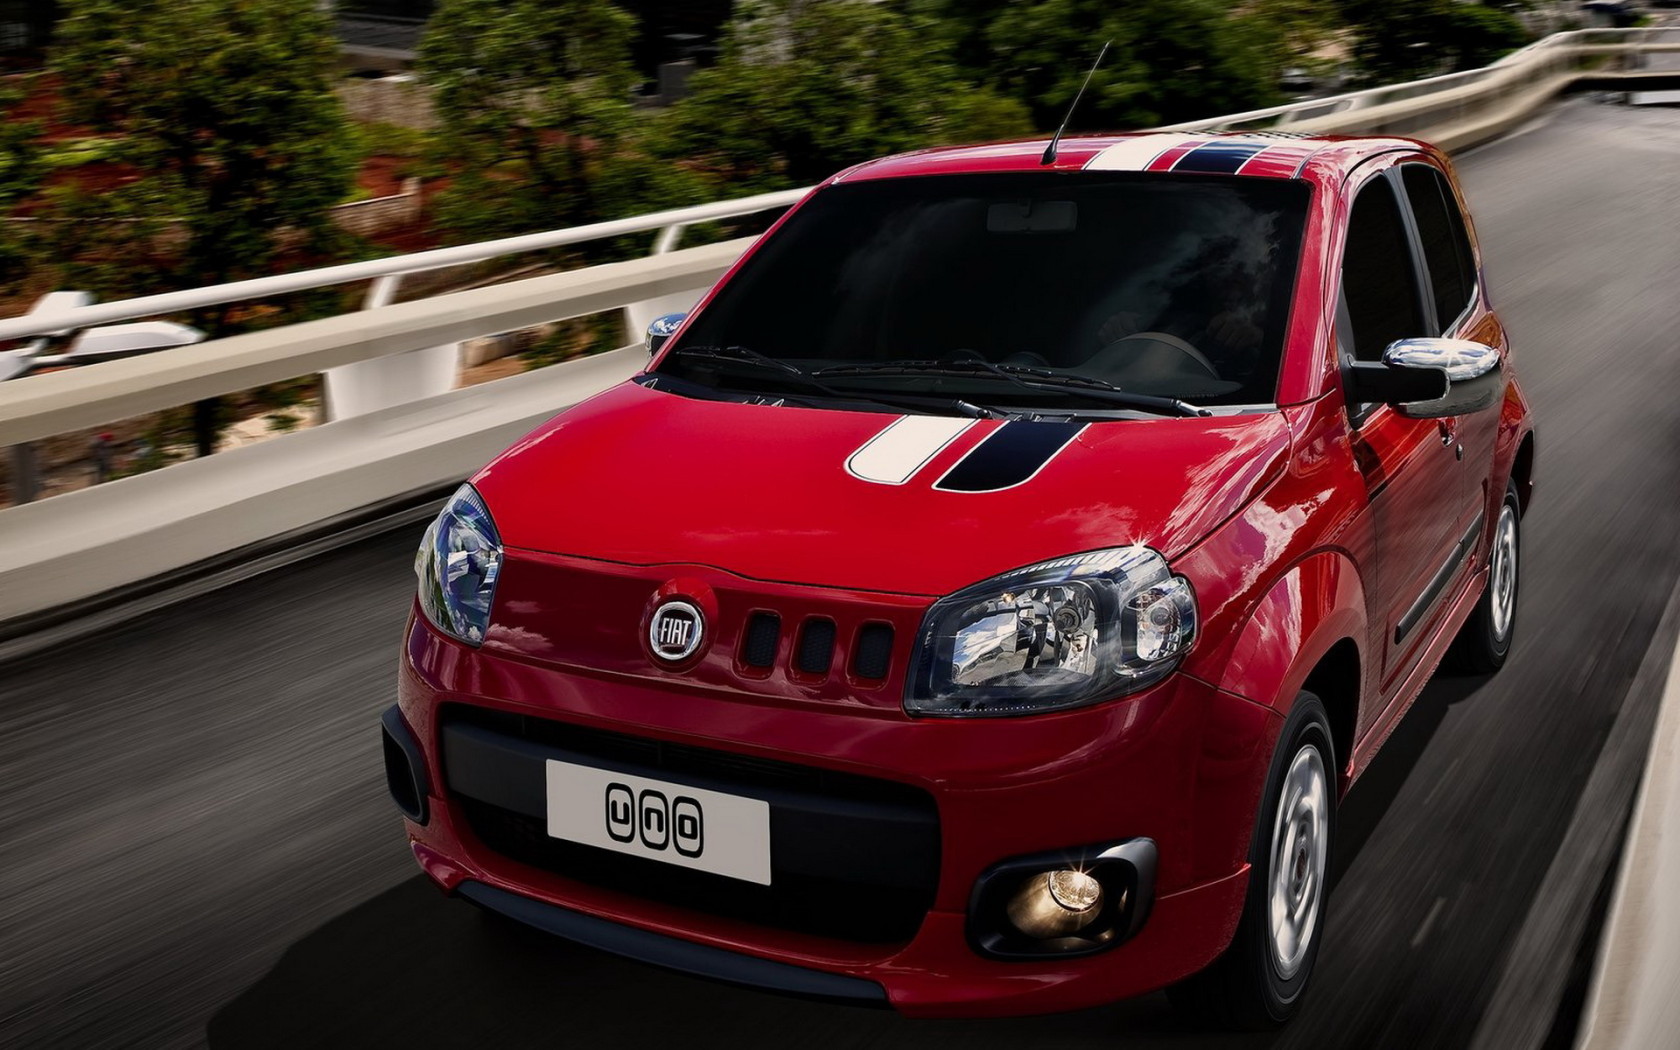 Fiat Uno in red colour